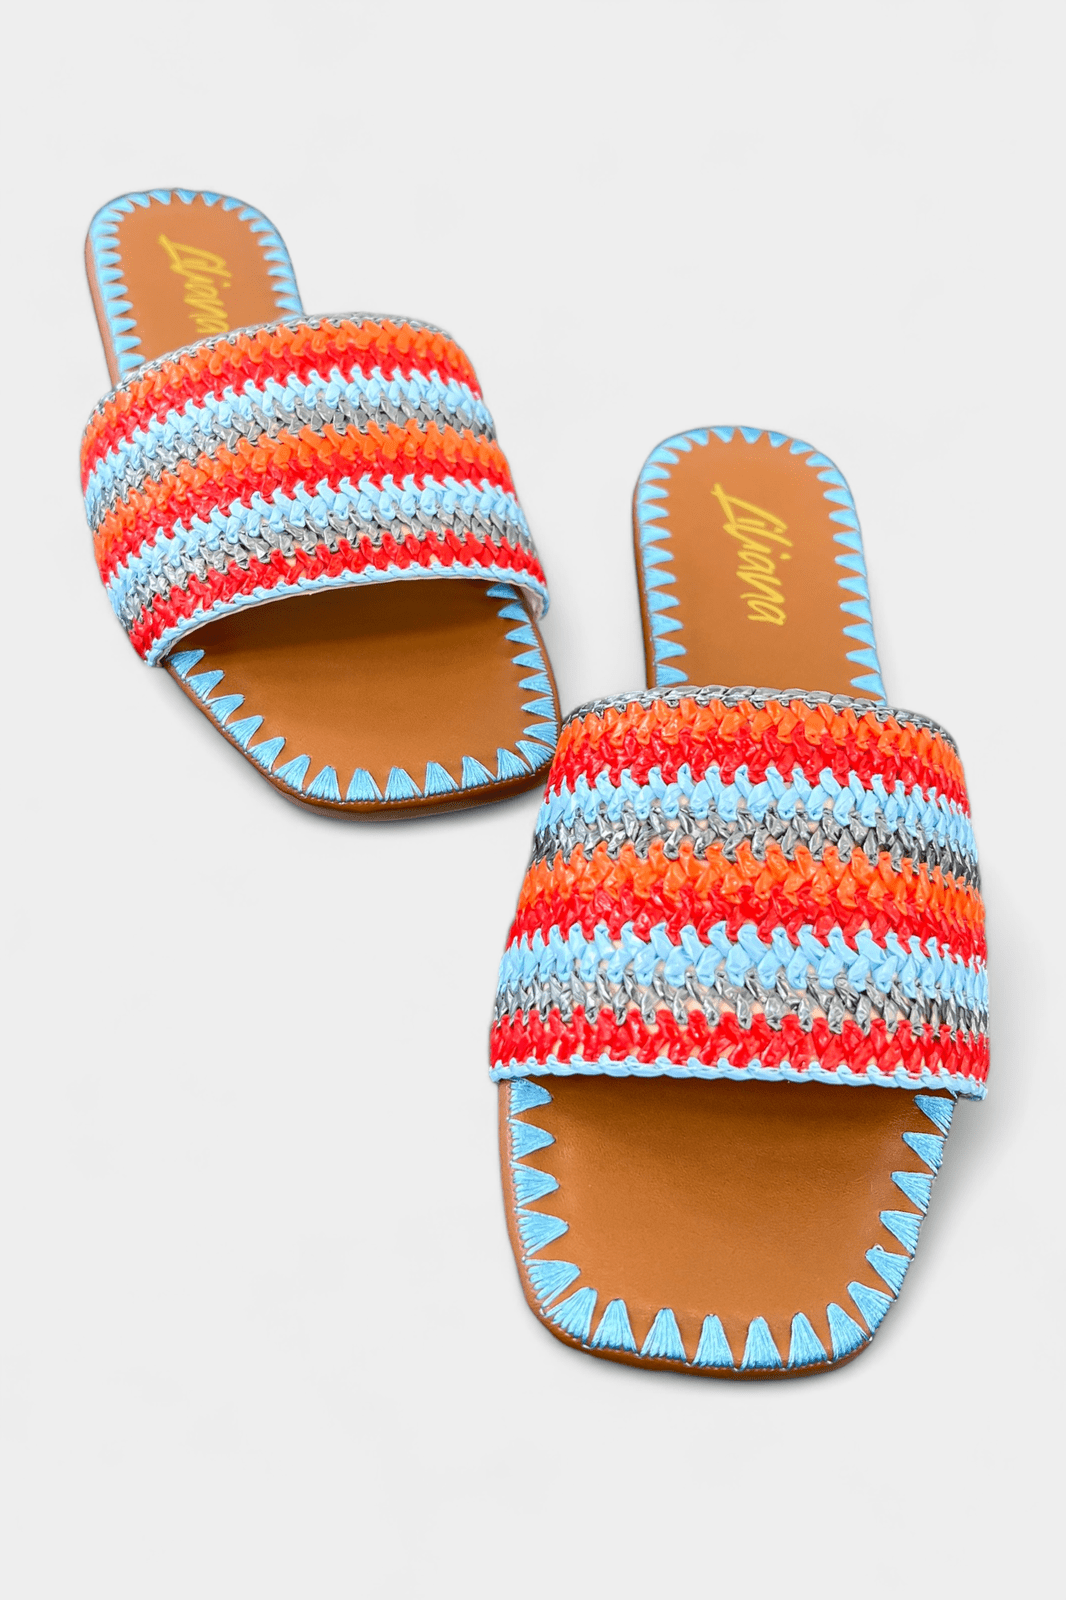 Blue Summer Sandals